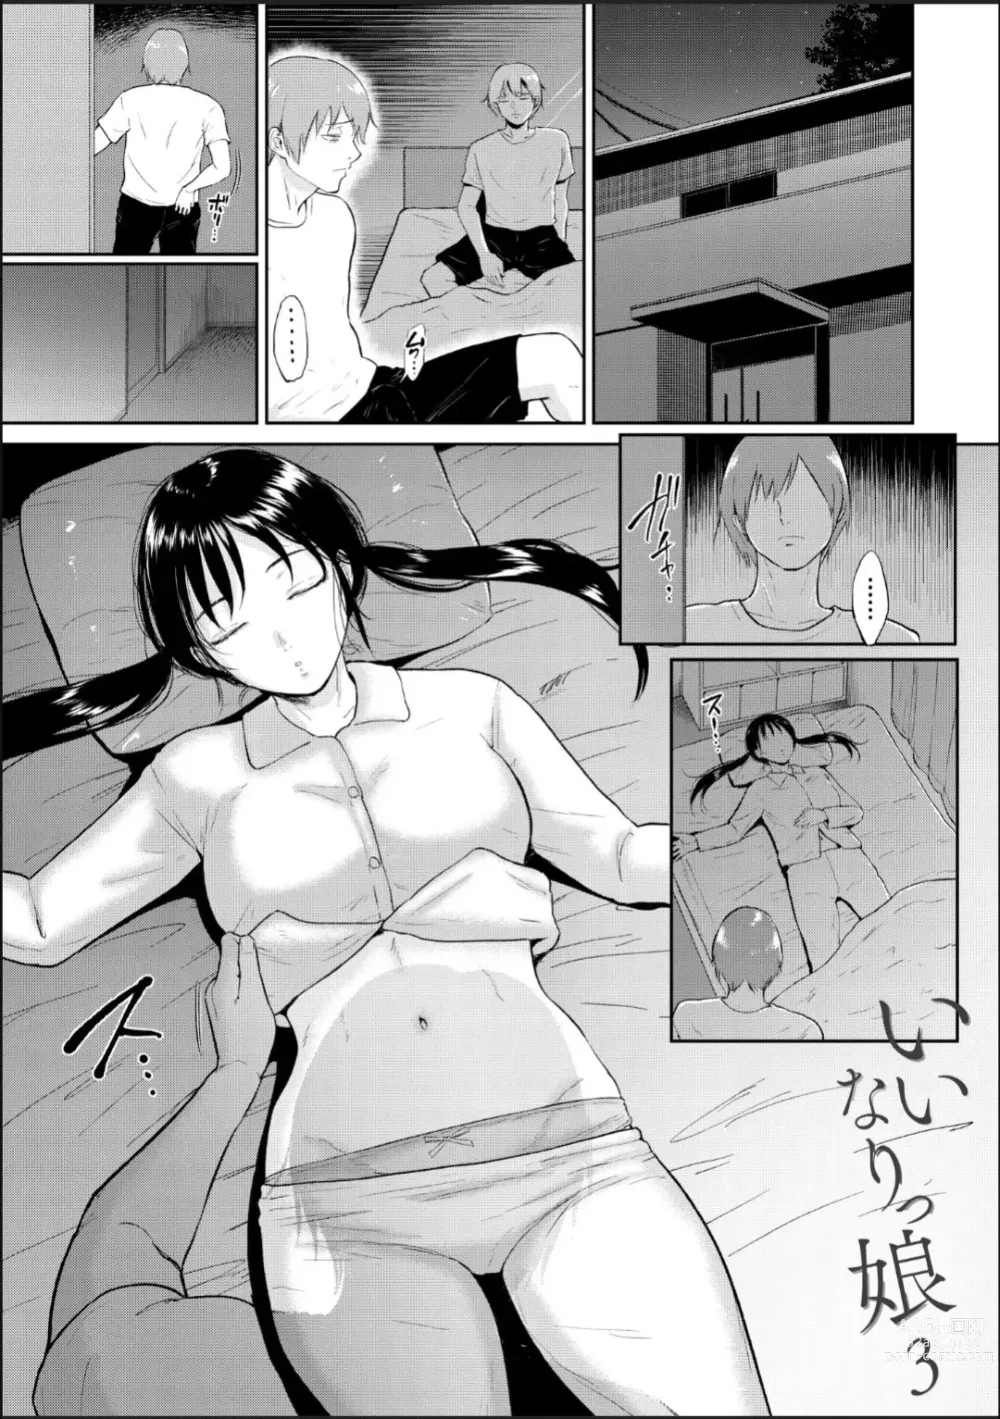 Page 2 of manga Iinarikko 3